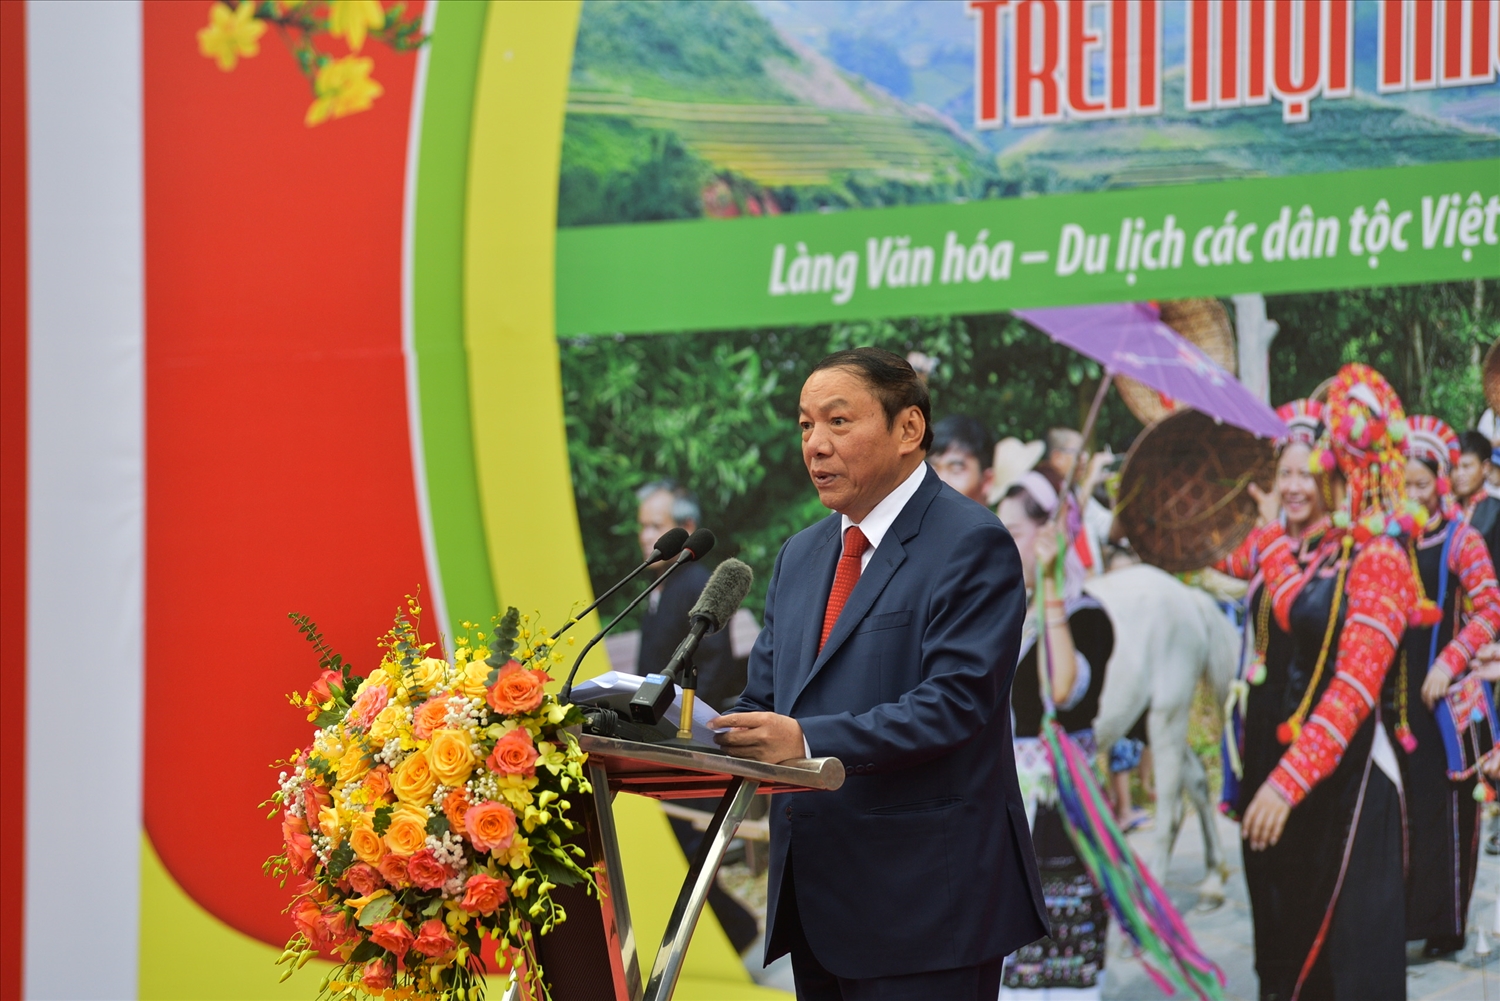 Bộ trưởng Bộ Văn hóa Thể thao và Du lịch Nguyễn Văn Hùng phát biểu tại ngày hội